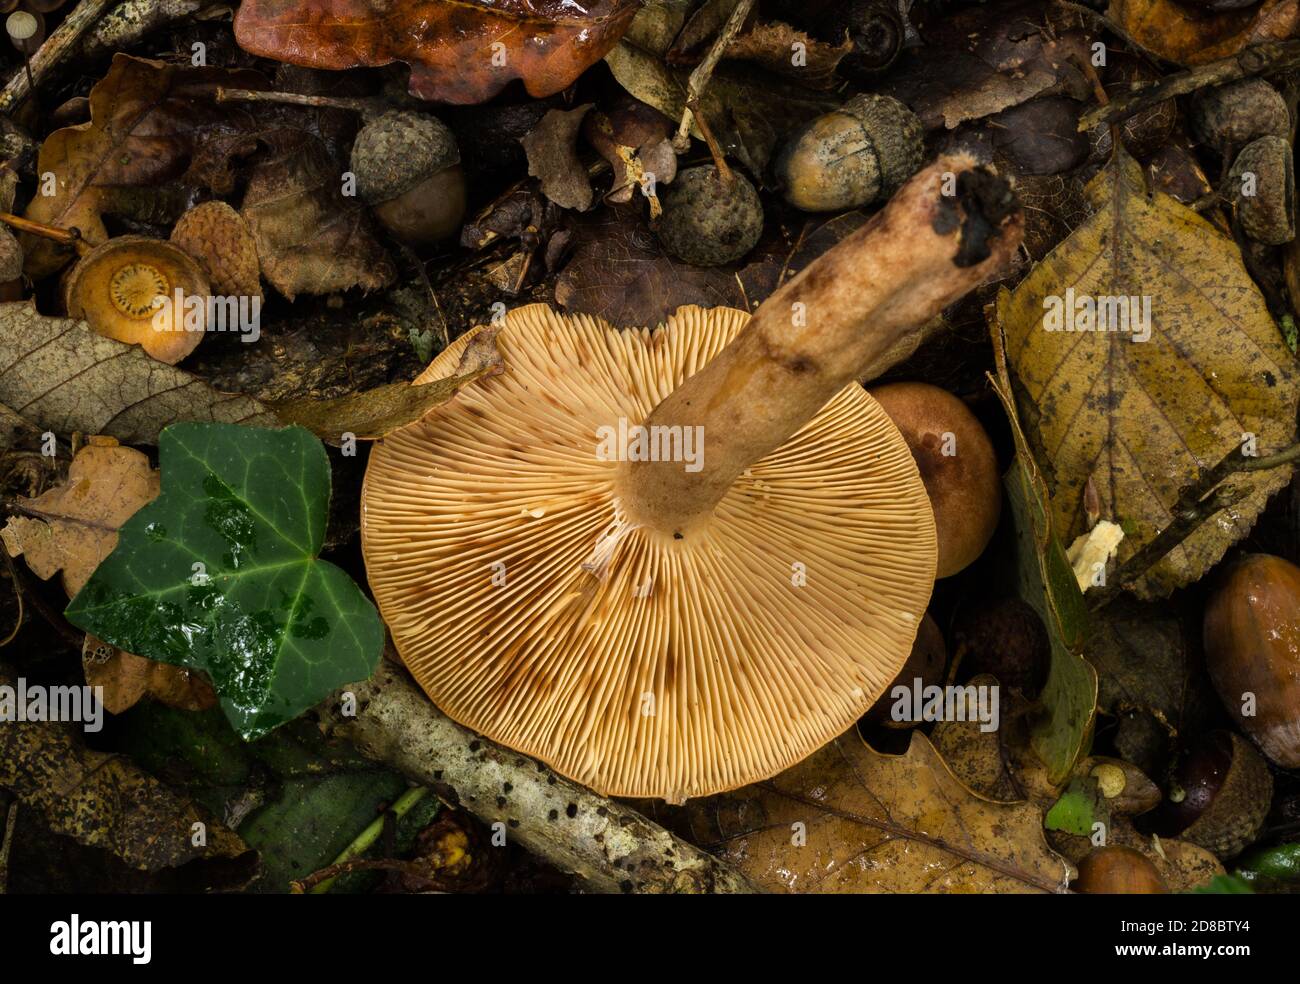 The gills of the oak milkcap mushroom or lactarius quietus. Stock Photo